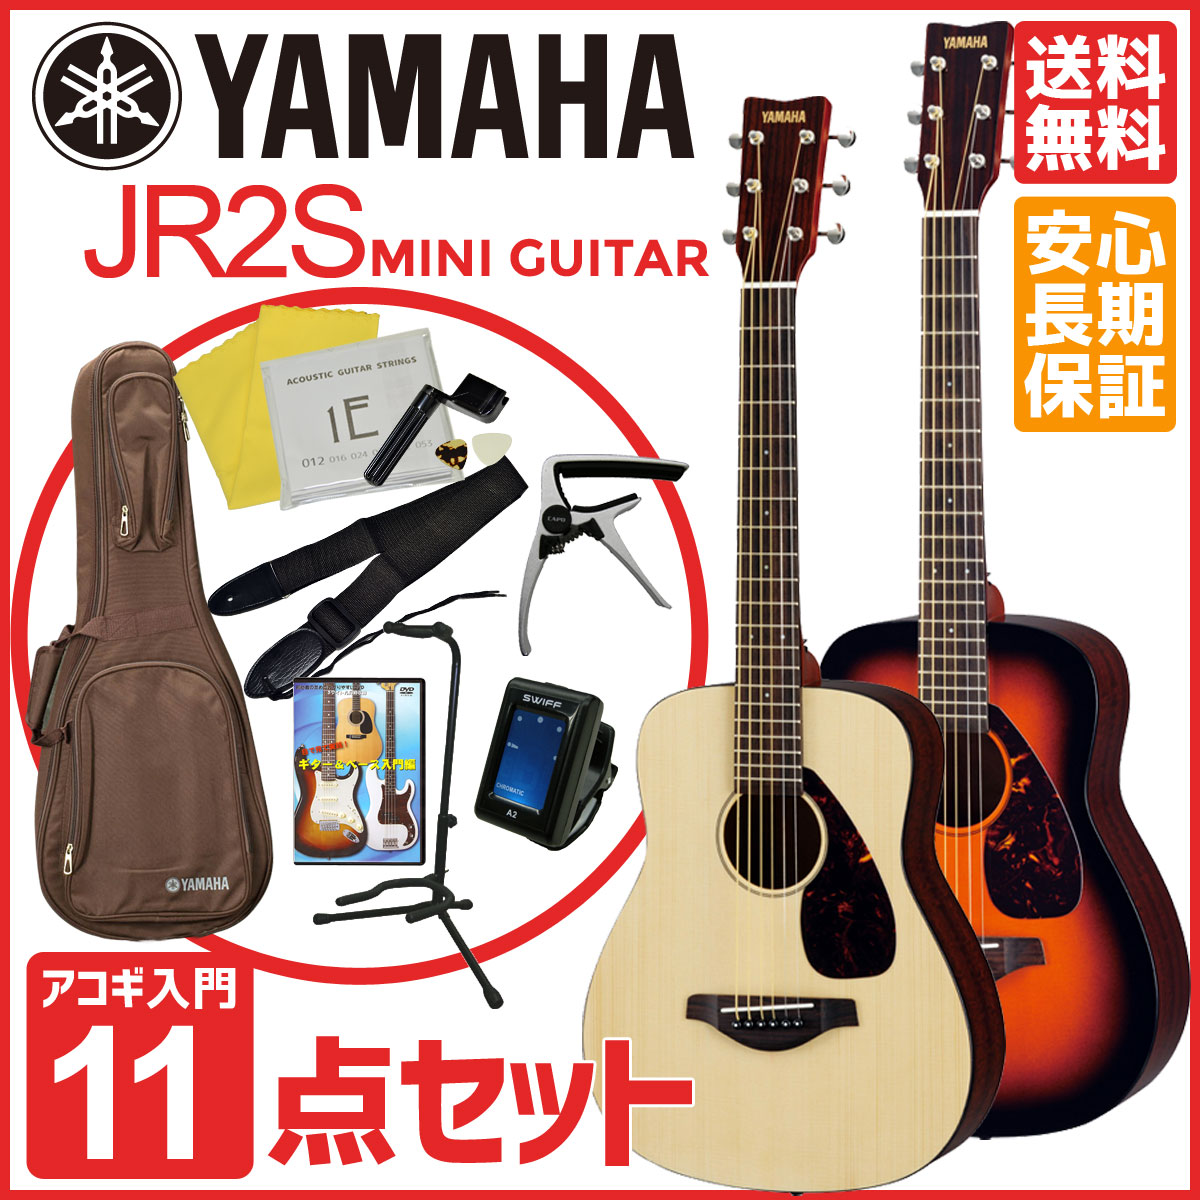 YAMAHA JR2S【ミニギター11点セット】ヤマハ ミニ アコースティックギター アコ…...:ishibashi:10136896